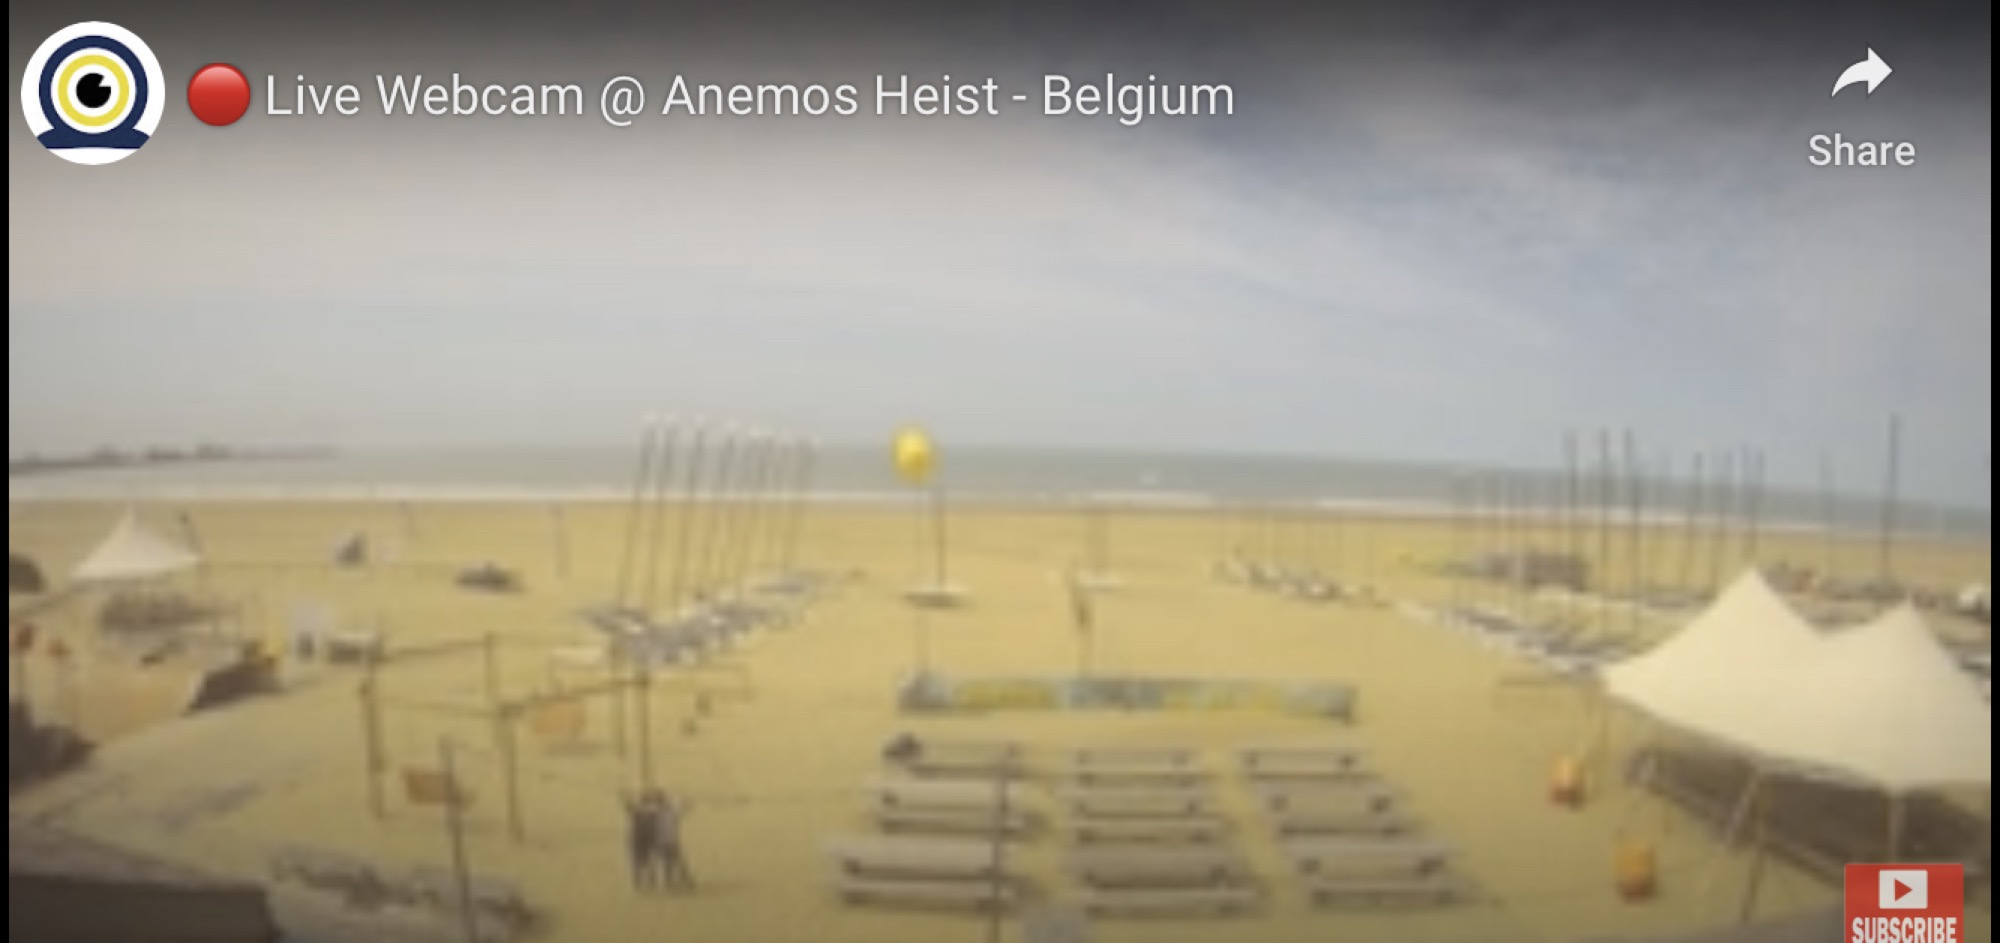 Live Webcam @ Anemos Heist Belgium, verschwommener Screenshot eines menschenleeren Strandes mit Zelten, Booten und Bänken, in der linken Hälfte des Bildes zwei Personen, die nebeneinander stehen und ihre Arme hochhalten